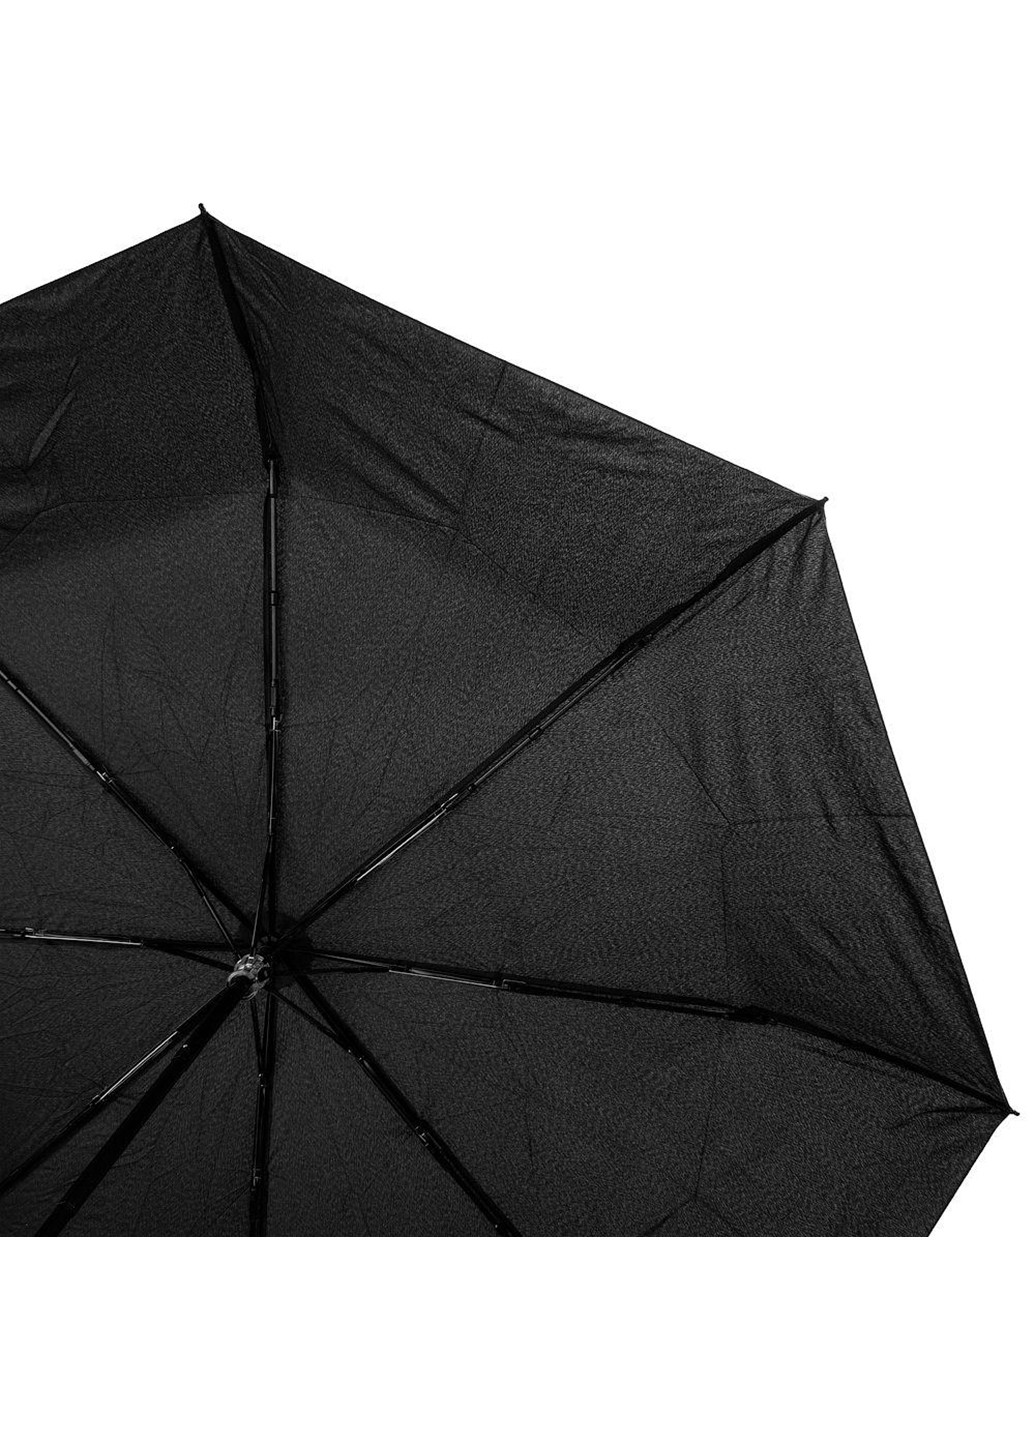 Мужской складной зонт механический 97 см ArtRain (255709341)